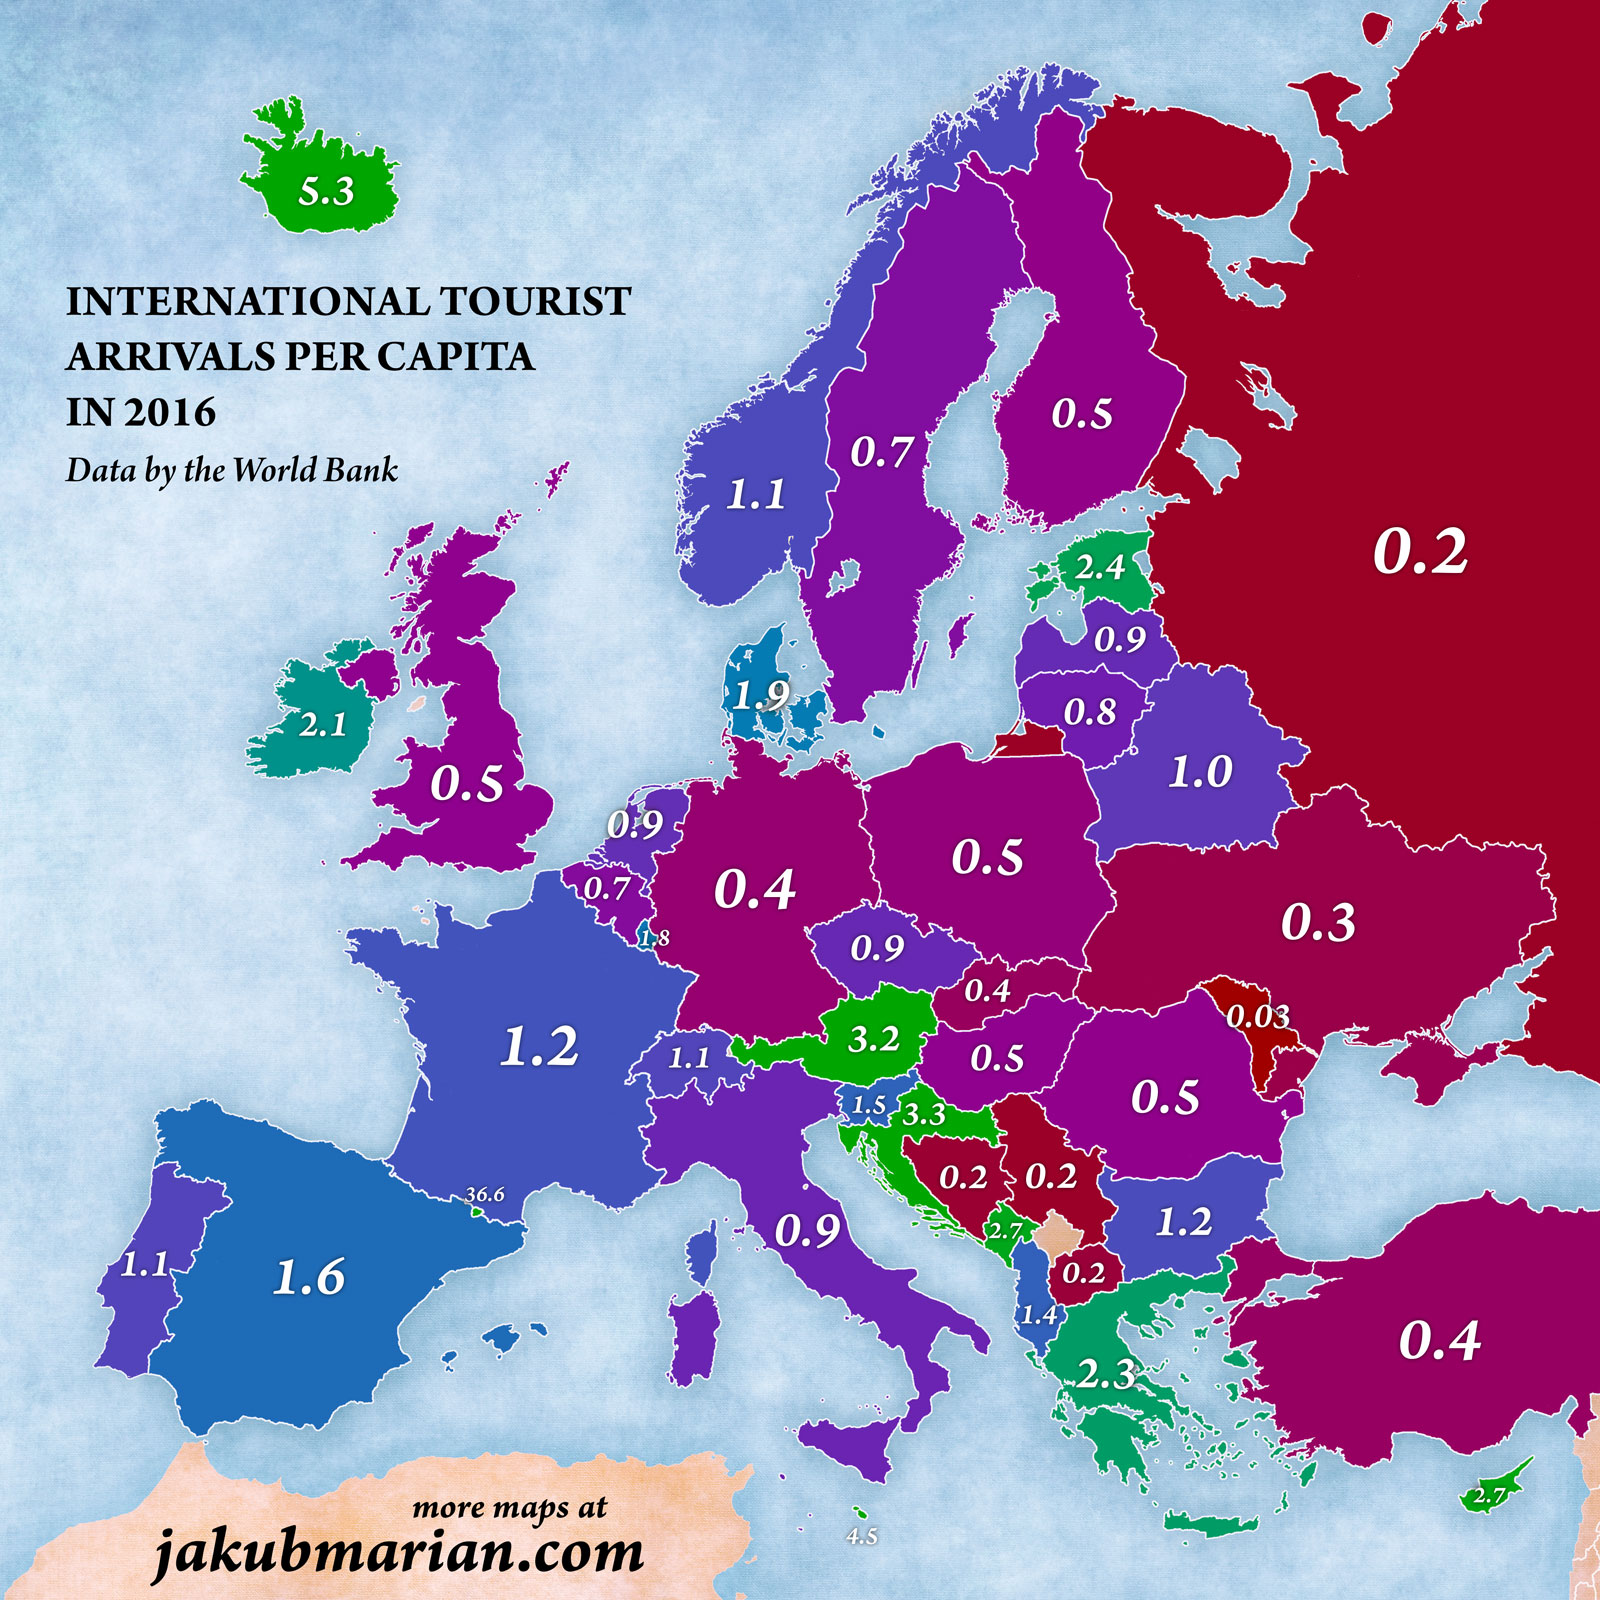 Tourist arrivals per capita in Europe